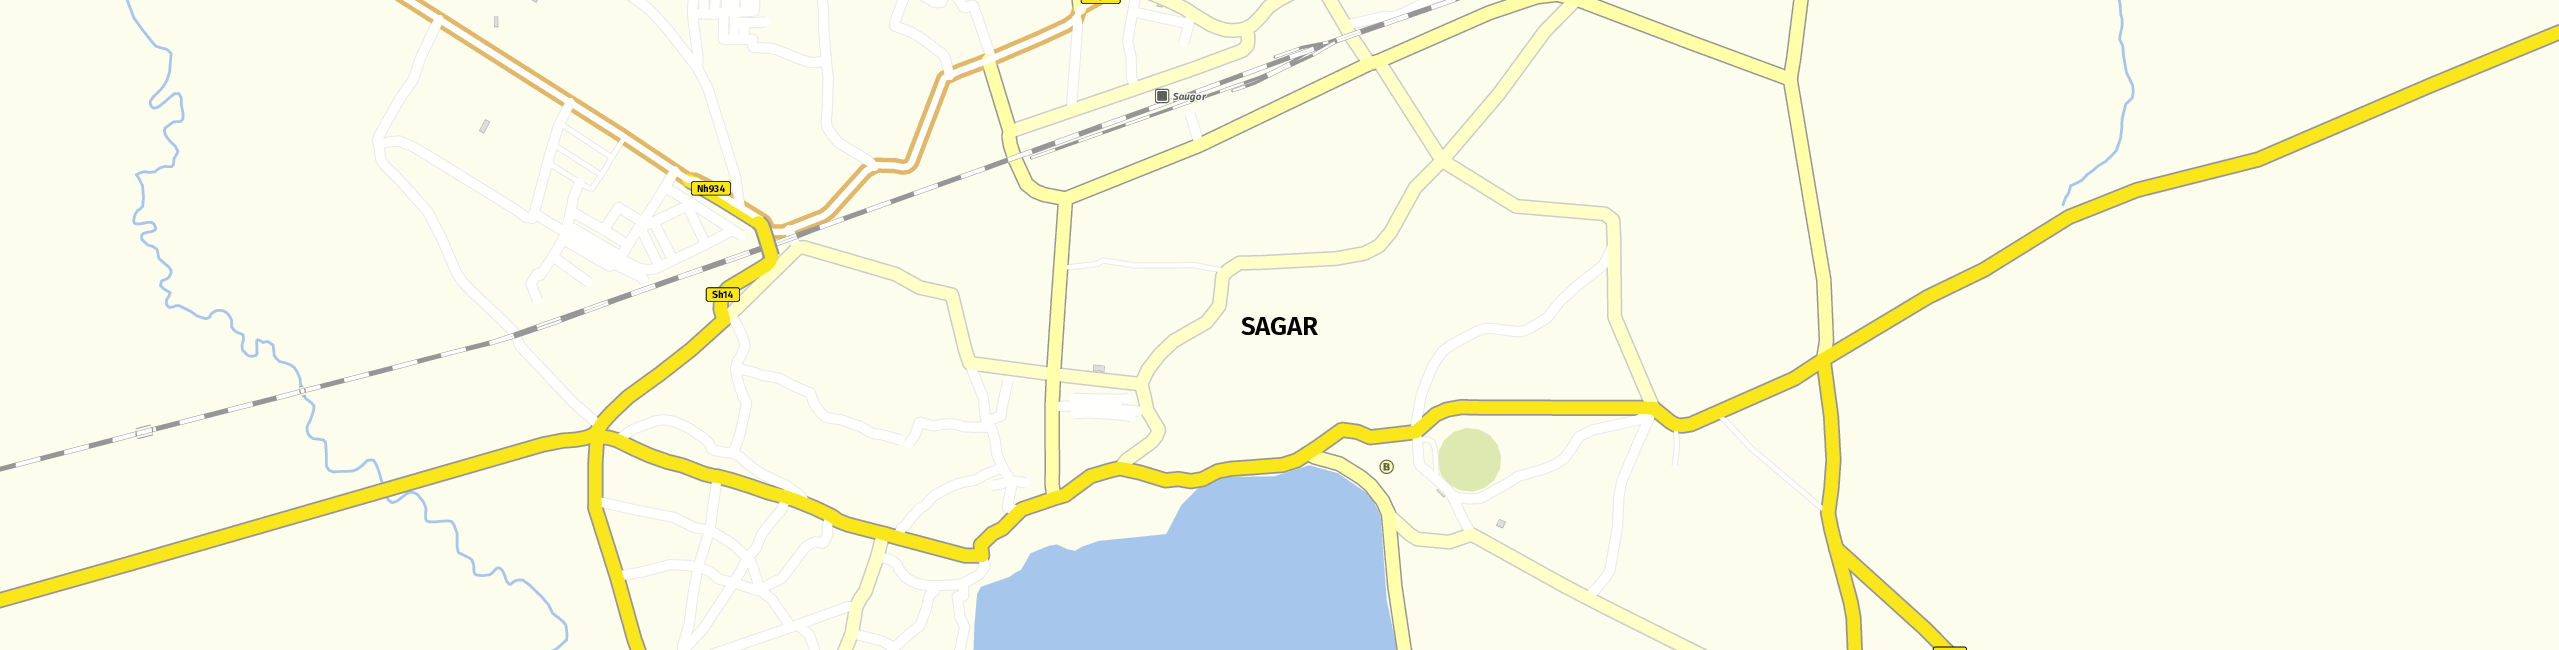 Stadtplan Sagar zum Downloaden.